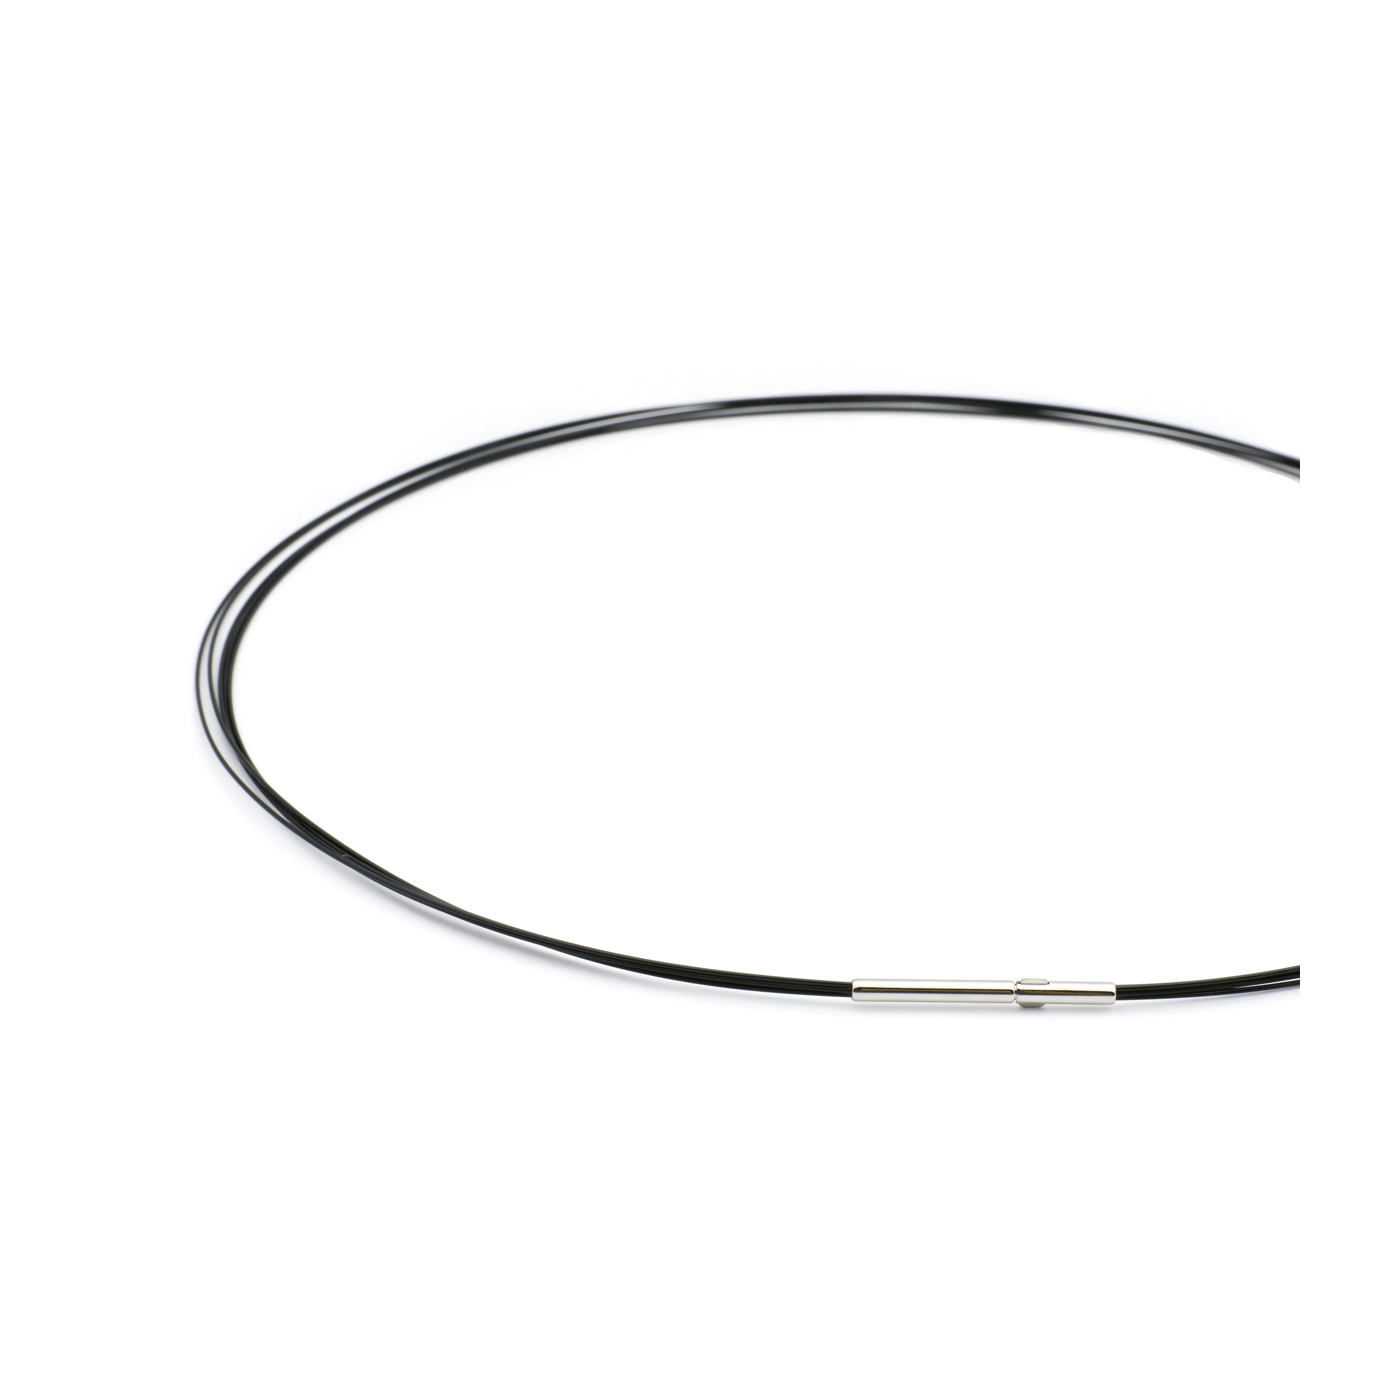 Rope Necklace, Black, 5 Rows, 42 cm - 1 piece